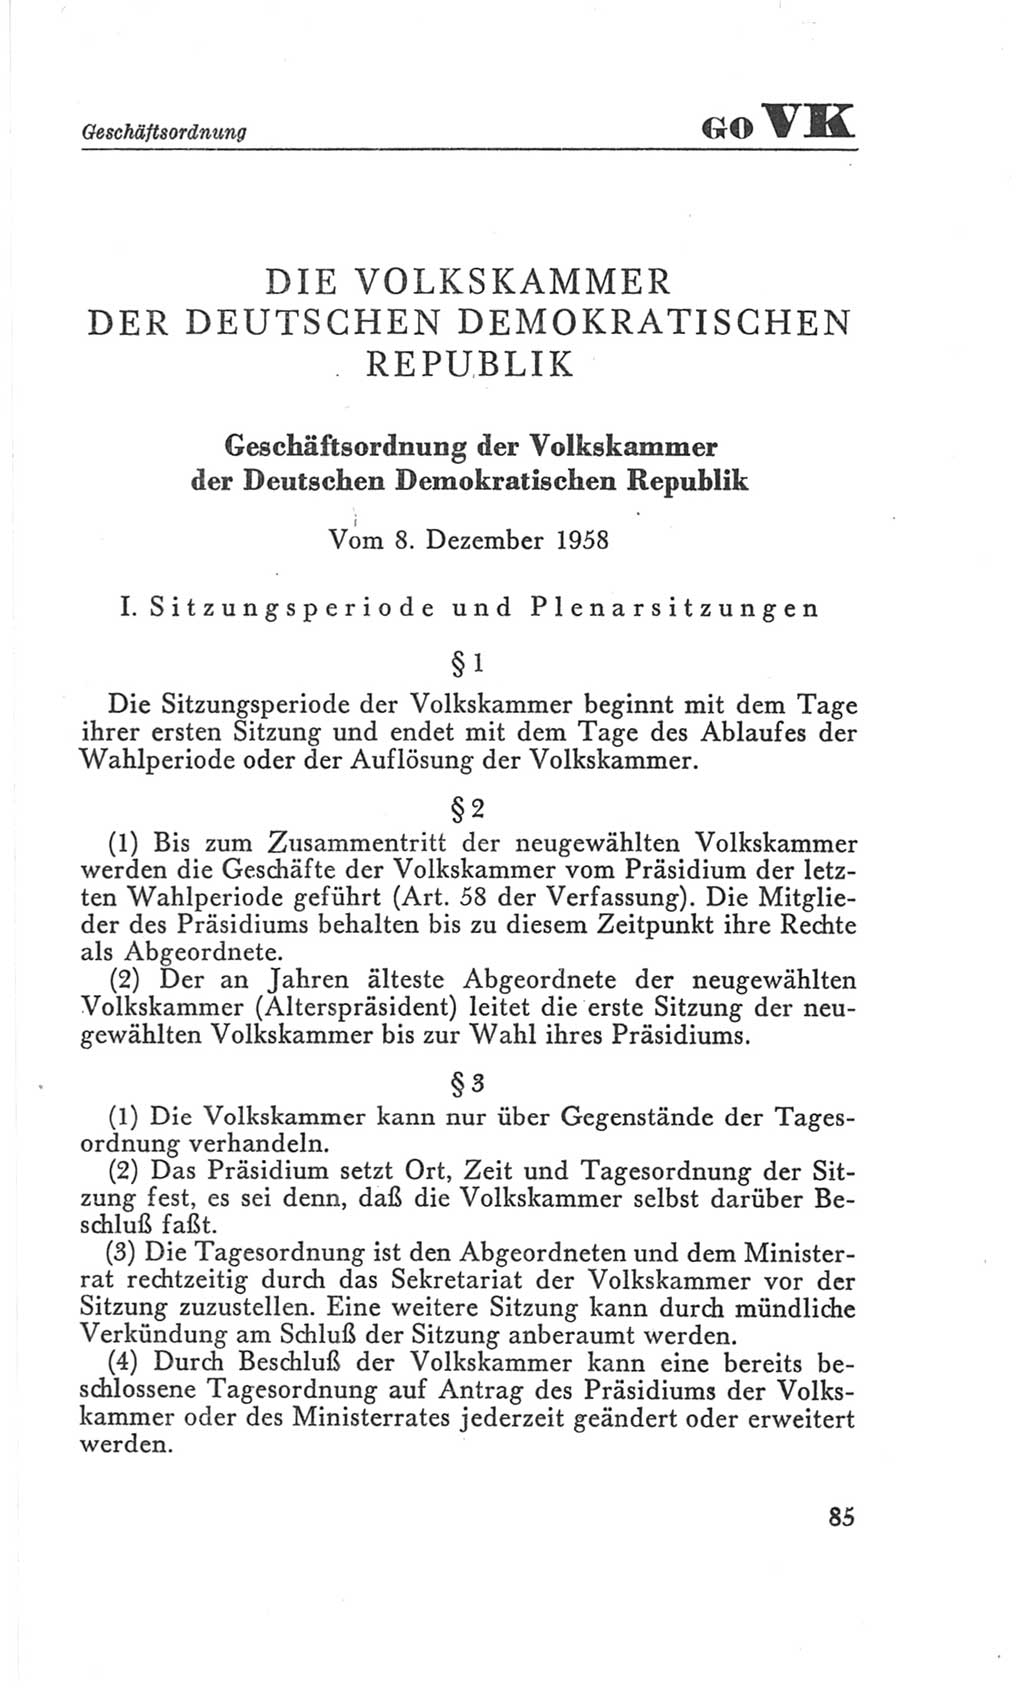 Handbuch der Volkskammer (VK) der Deutschen Demokratischen Republik (DDR), 3. Wahlperiode 1958-1963, Seite 85 (Hdb. VK. DDR 3. WP. 1958-1963, S. 85)